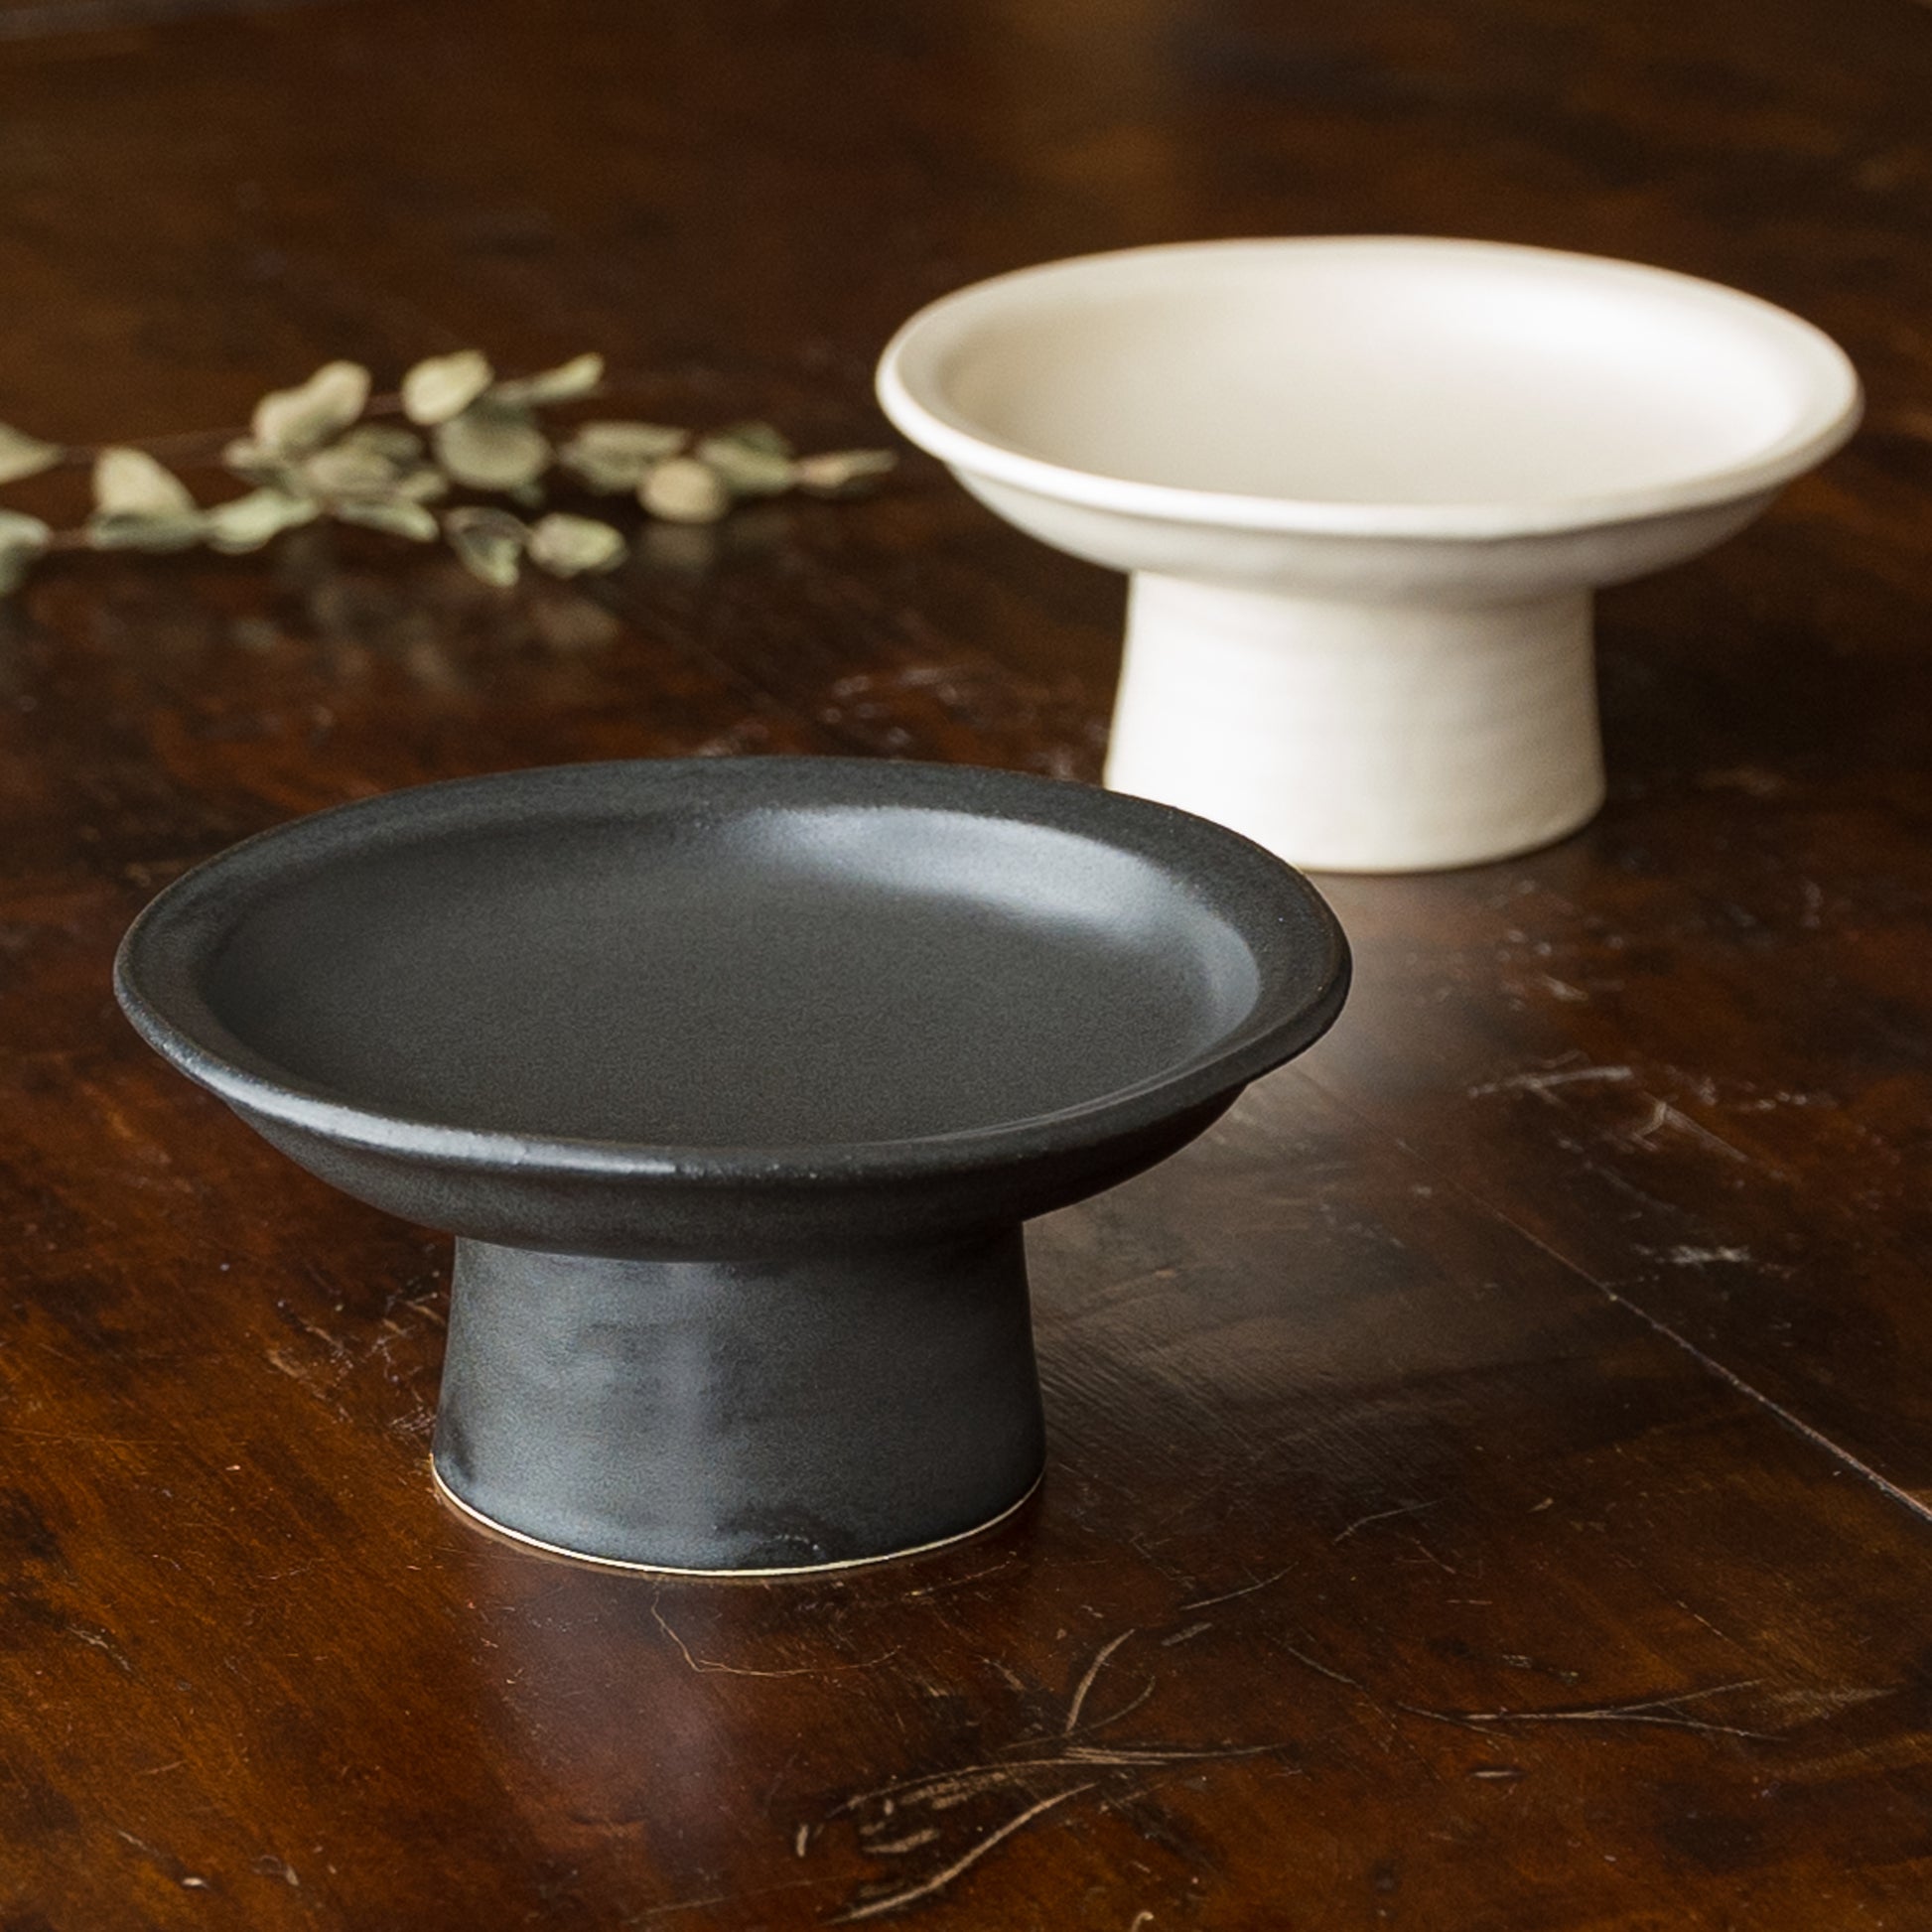 食卓の雰囲気がぐっと上がるyoshida potteryの高杯皿